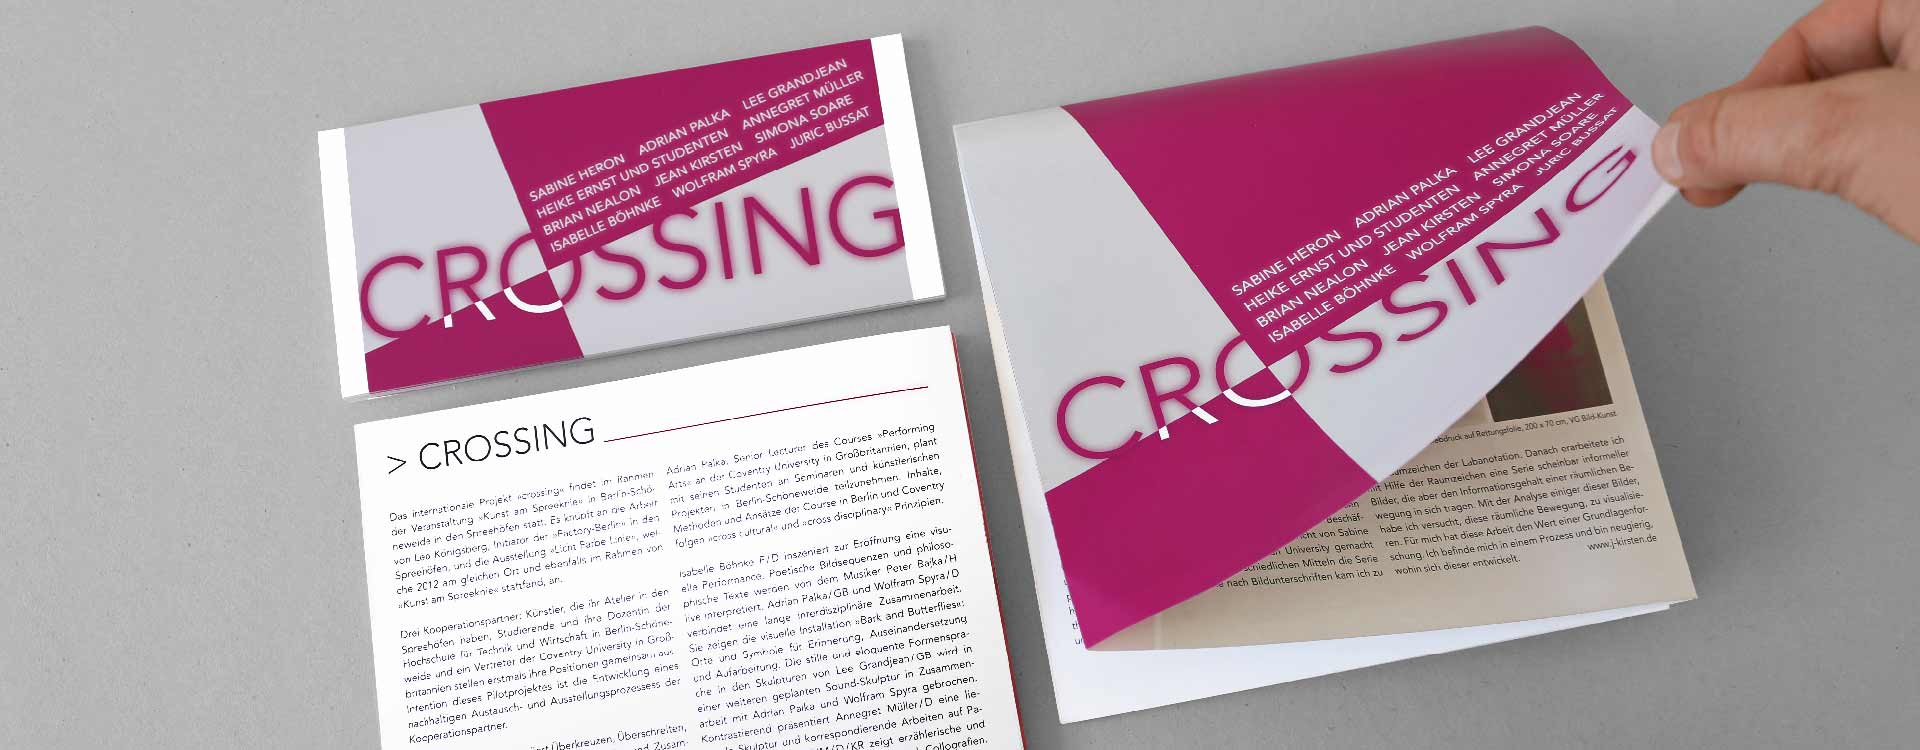 Invitation card for the exhibition Crossing in the Spreehöfen in Berlin Schöneweide; Design: Kattrin Richter | Graphic Design Studio